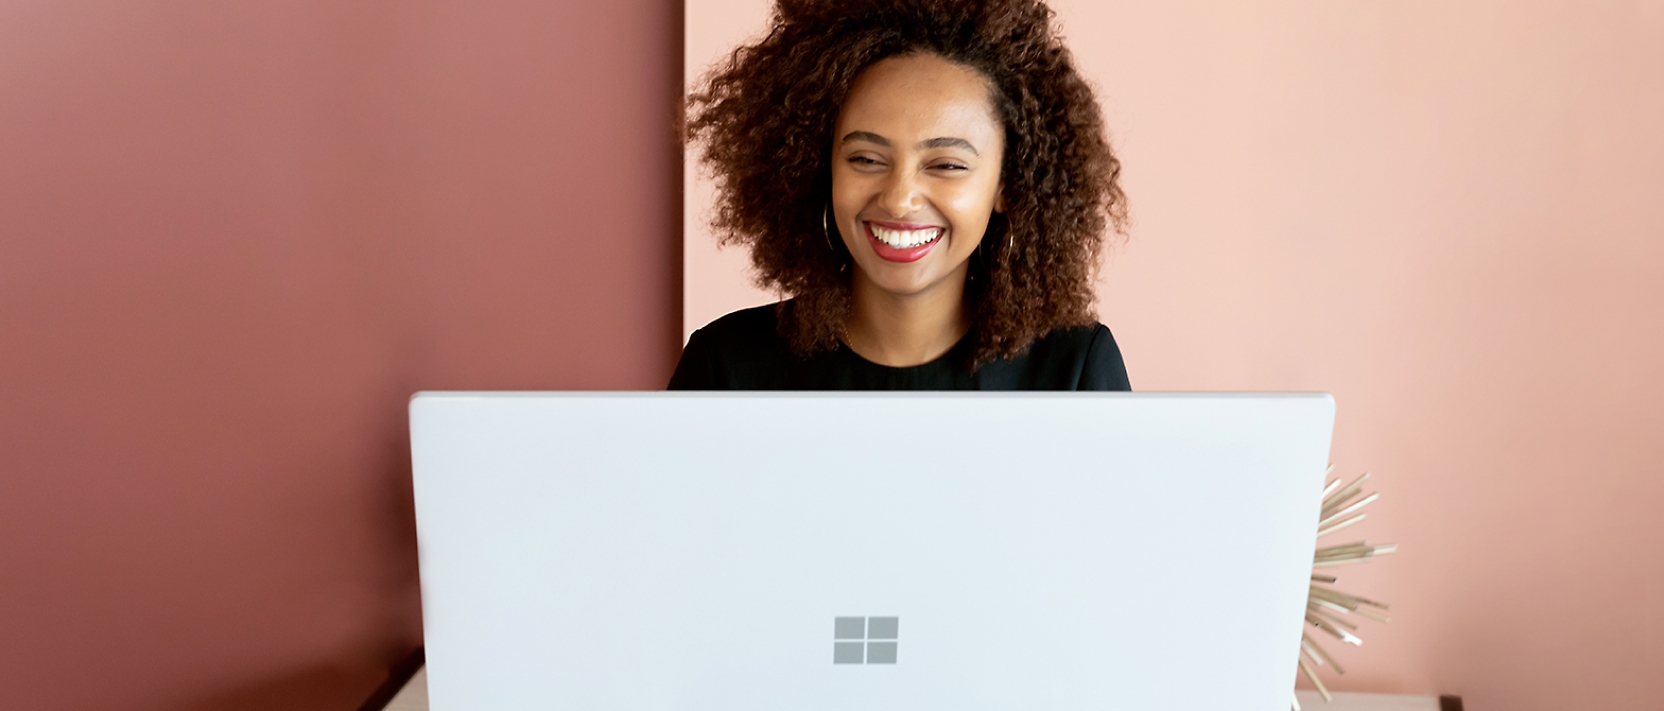 En kvinna ler medan hen arbetar på en bärbar dator.